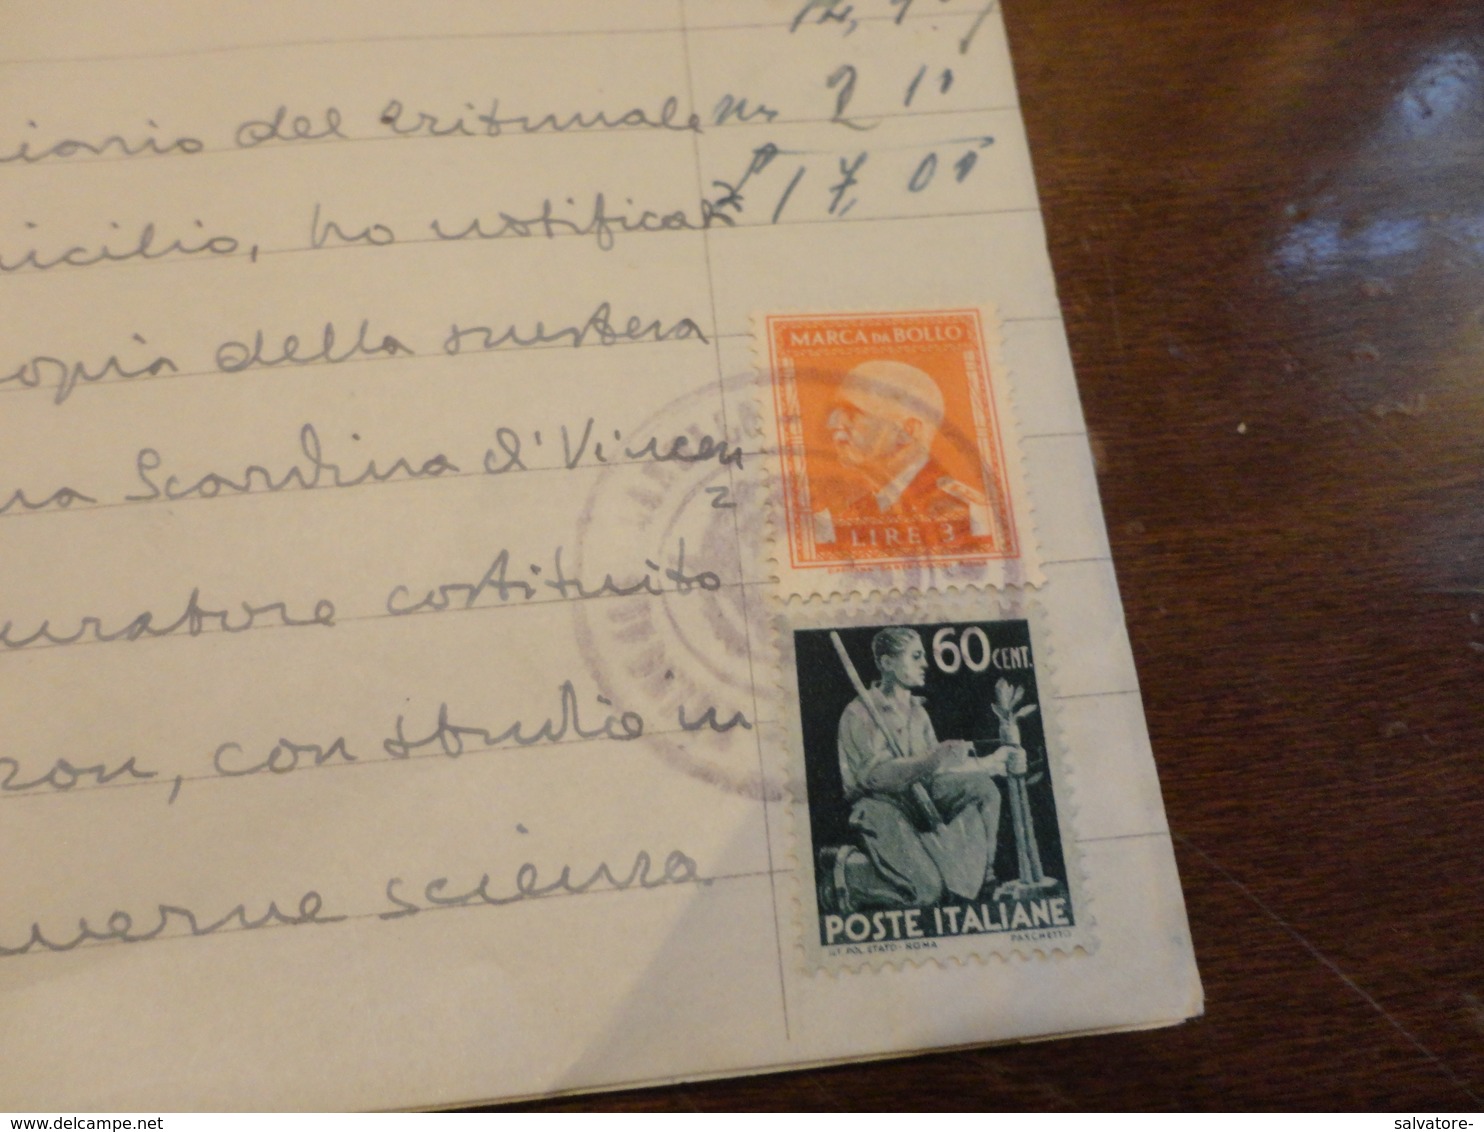 FRANCOBOLLO LUOGOTENENZA CENTESIMI 60 USATO COME FISCALE + MARCA DA BOLLO LIRE 8-DICEMBRE 1945 - Revenue Stamps